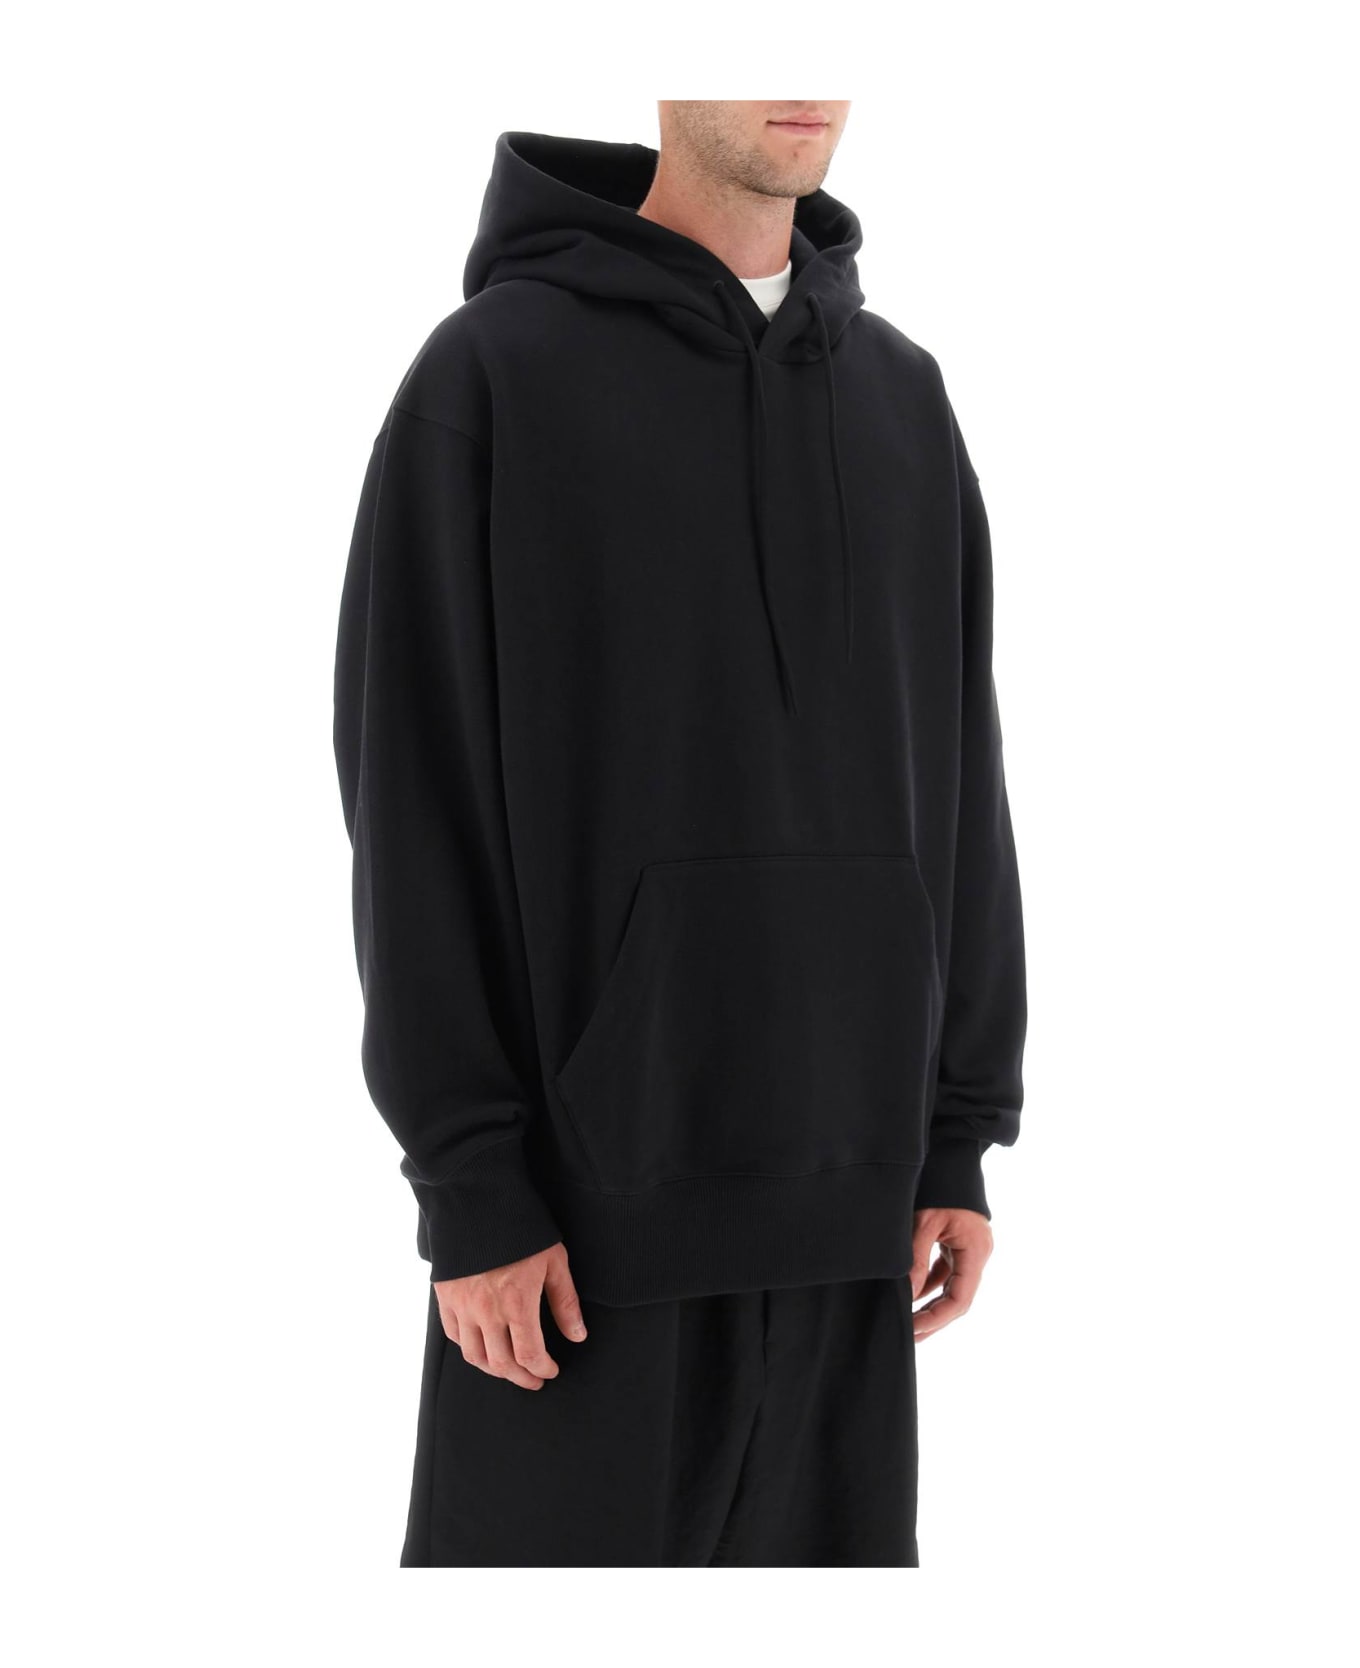 Y-3 Hooded Sweatshirt - Black